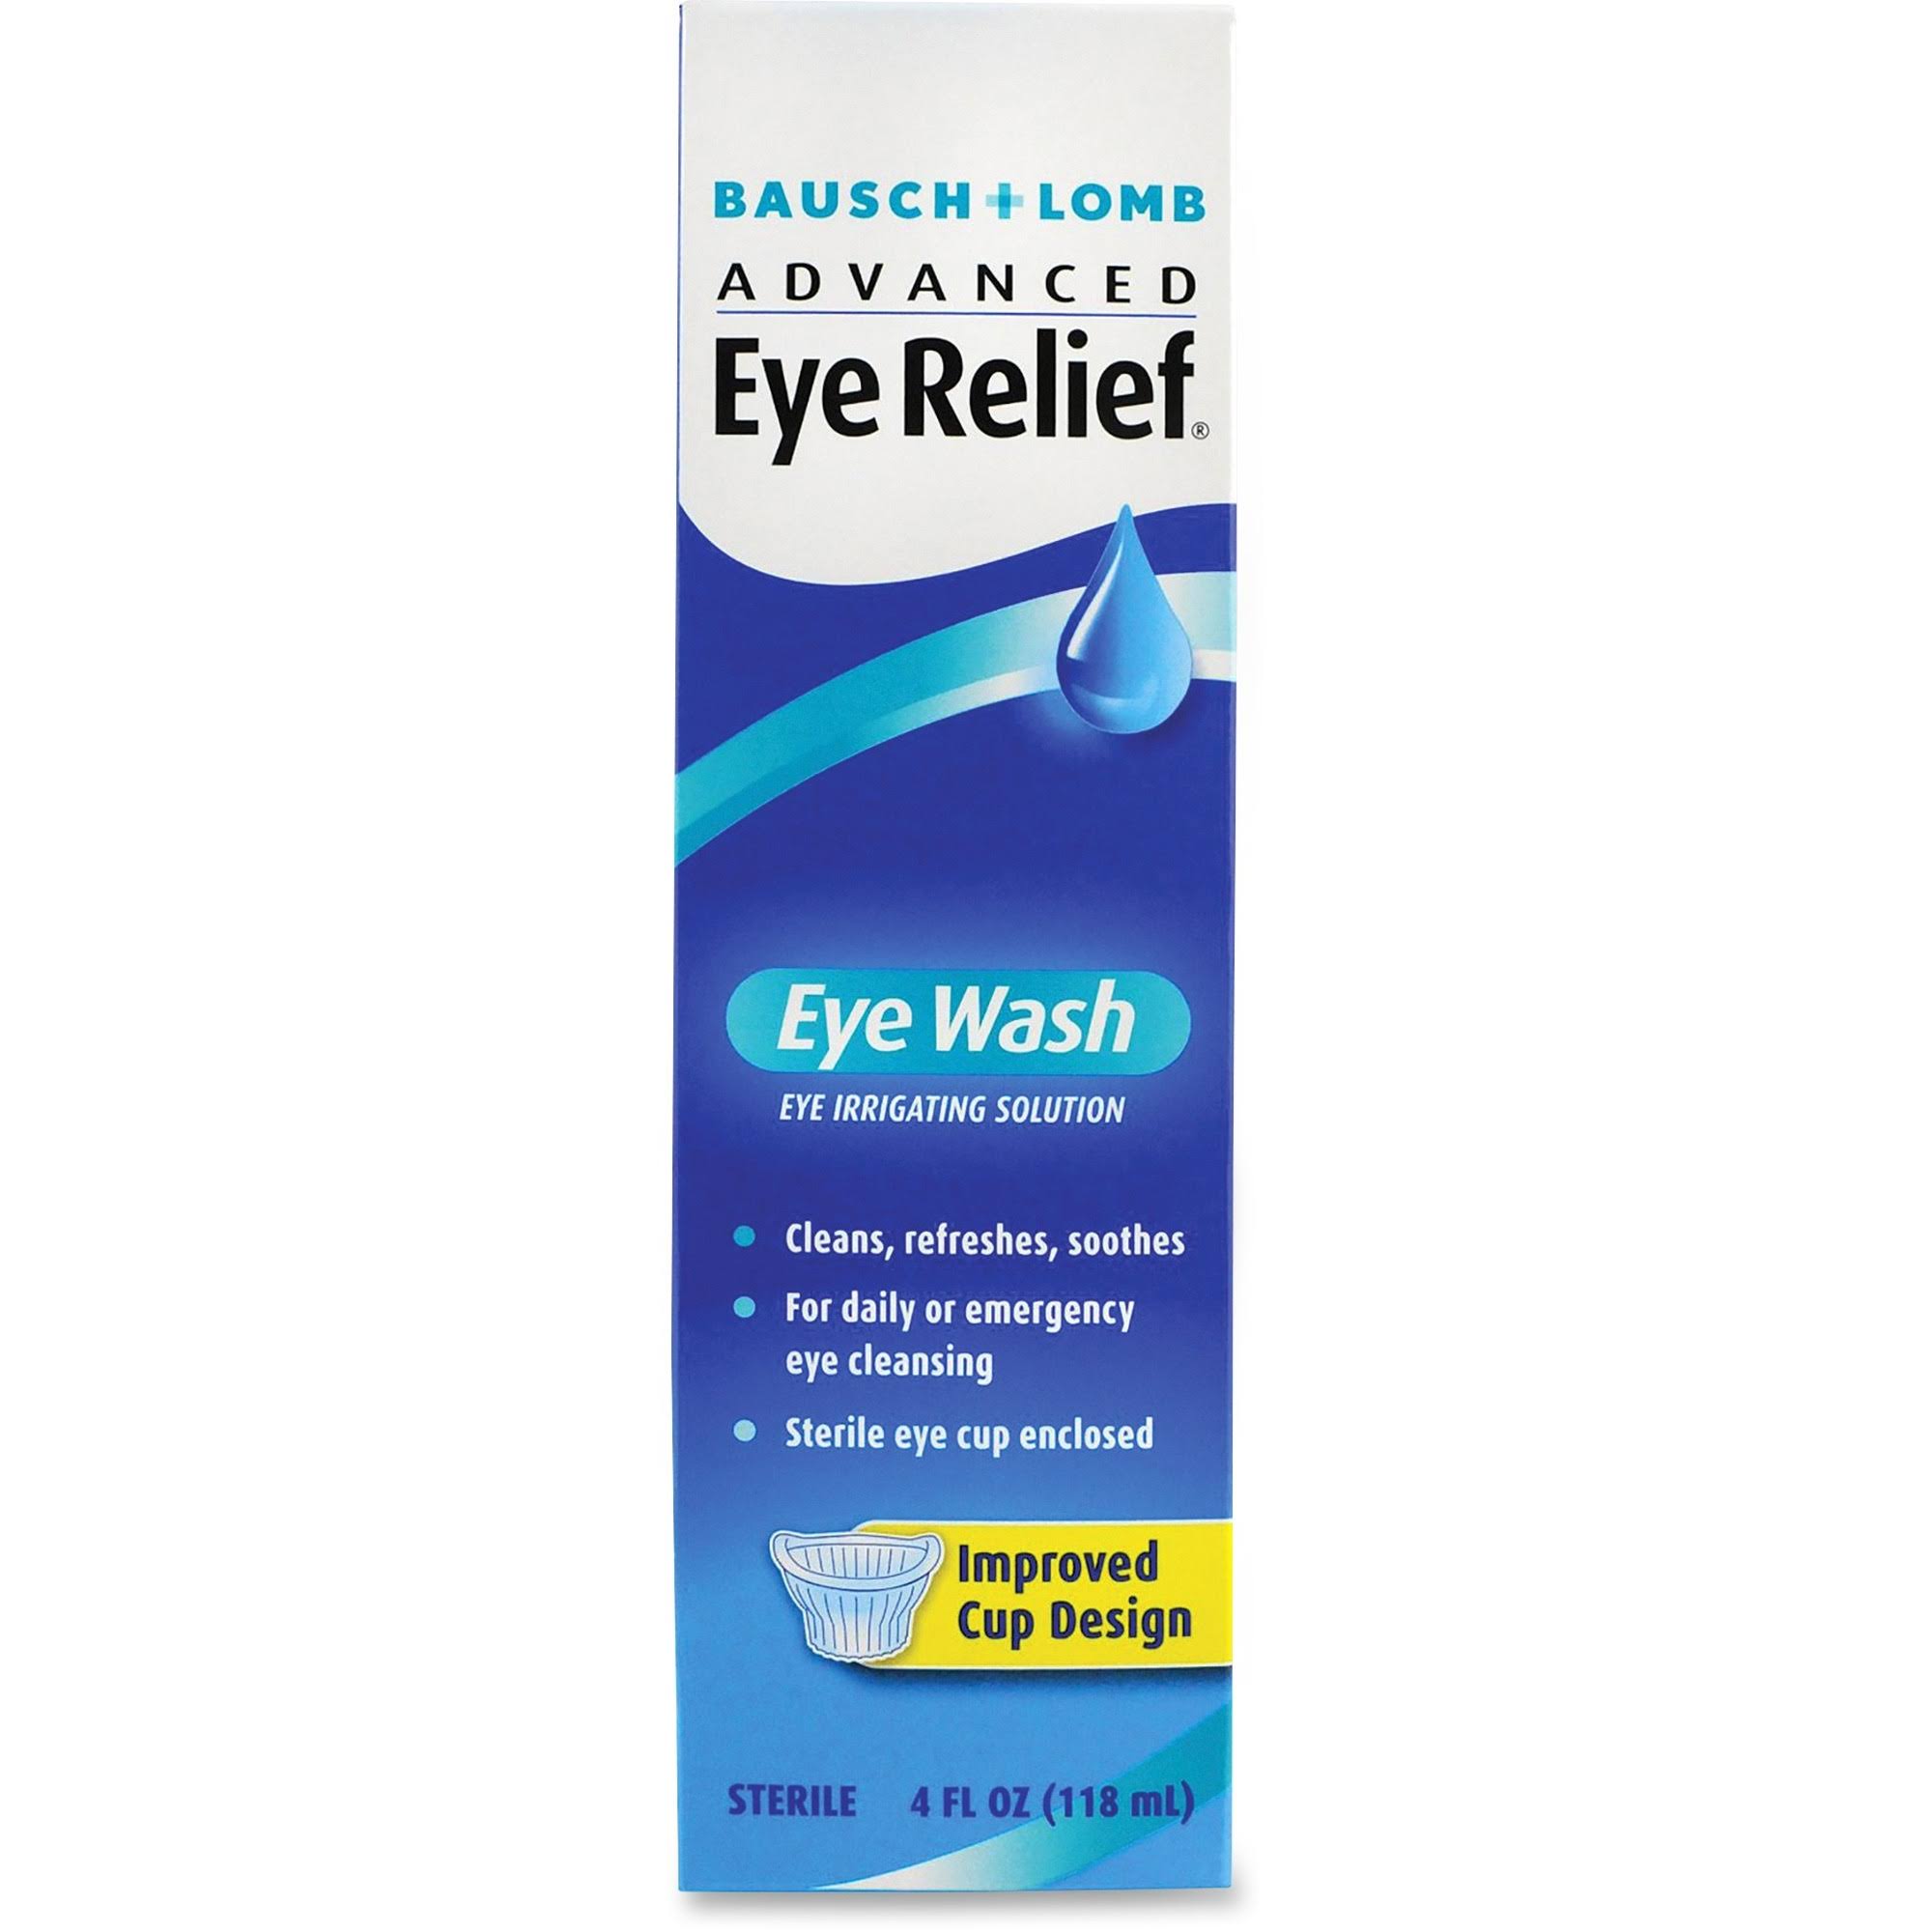 Bausch + Lomb Advanced Eye Relief Eye Wash - 118ml